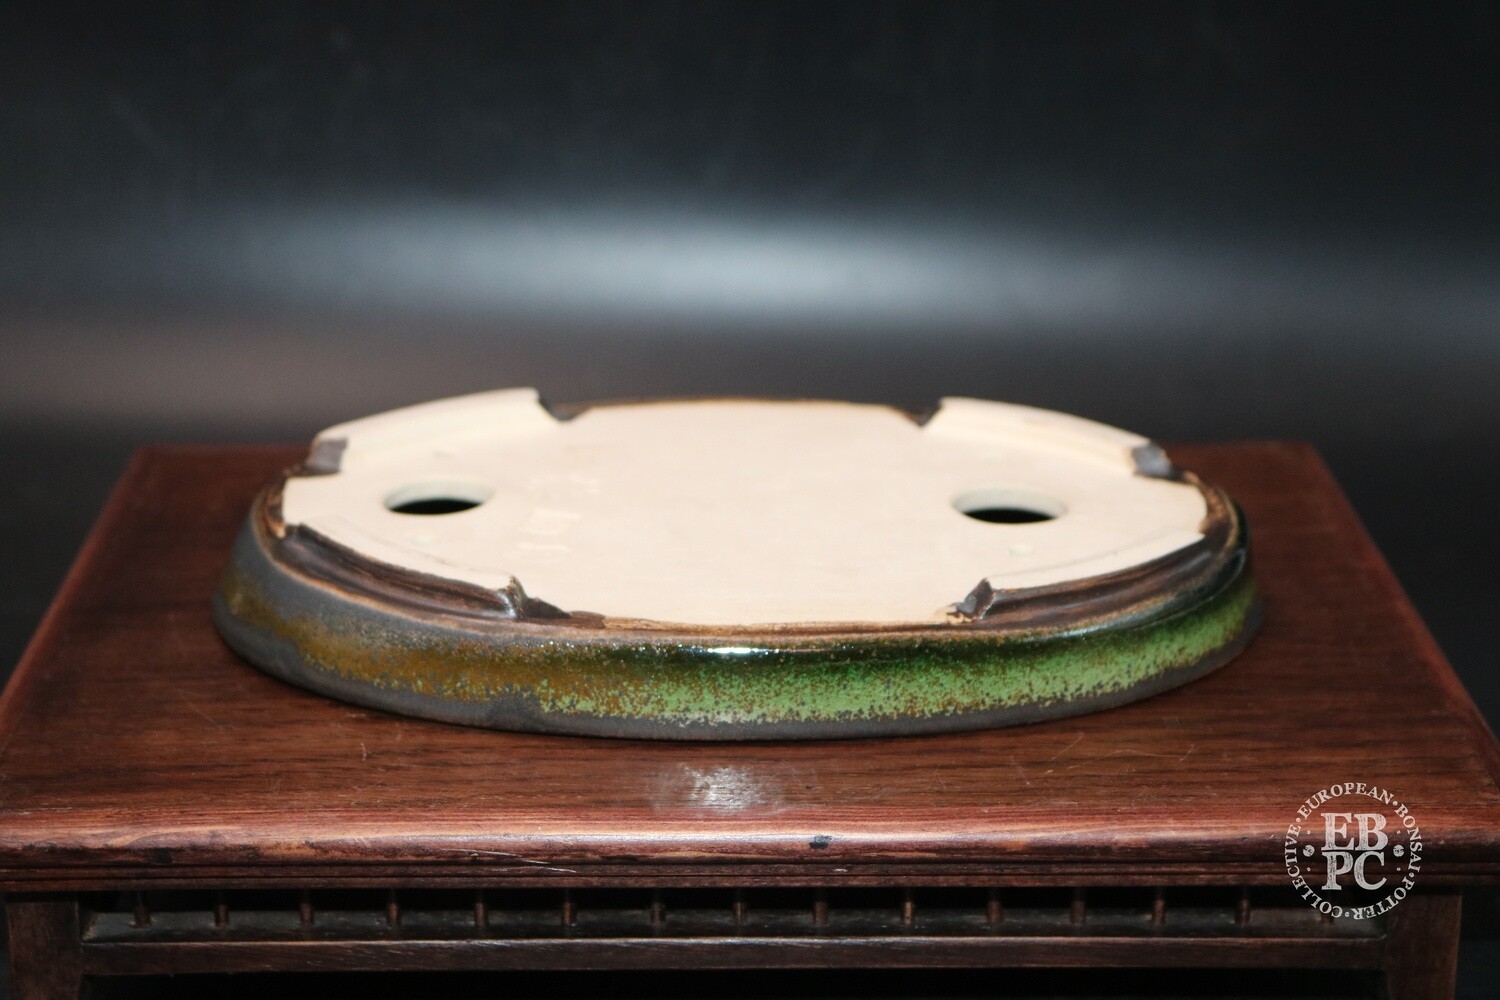 SOLD - Sabine Besnard - 20.7cm; Oval; Glazed, Translucent Green; Browns; Crackle Glaze